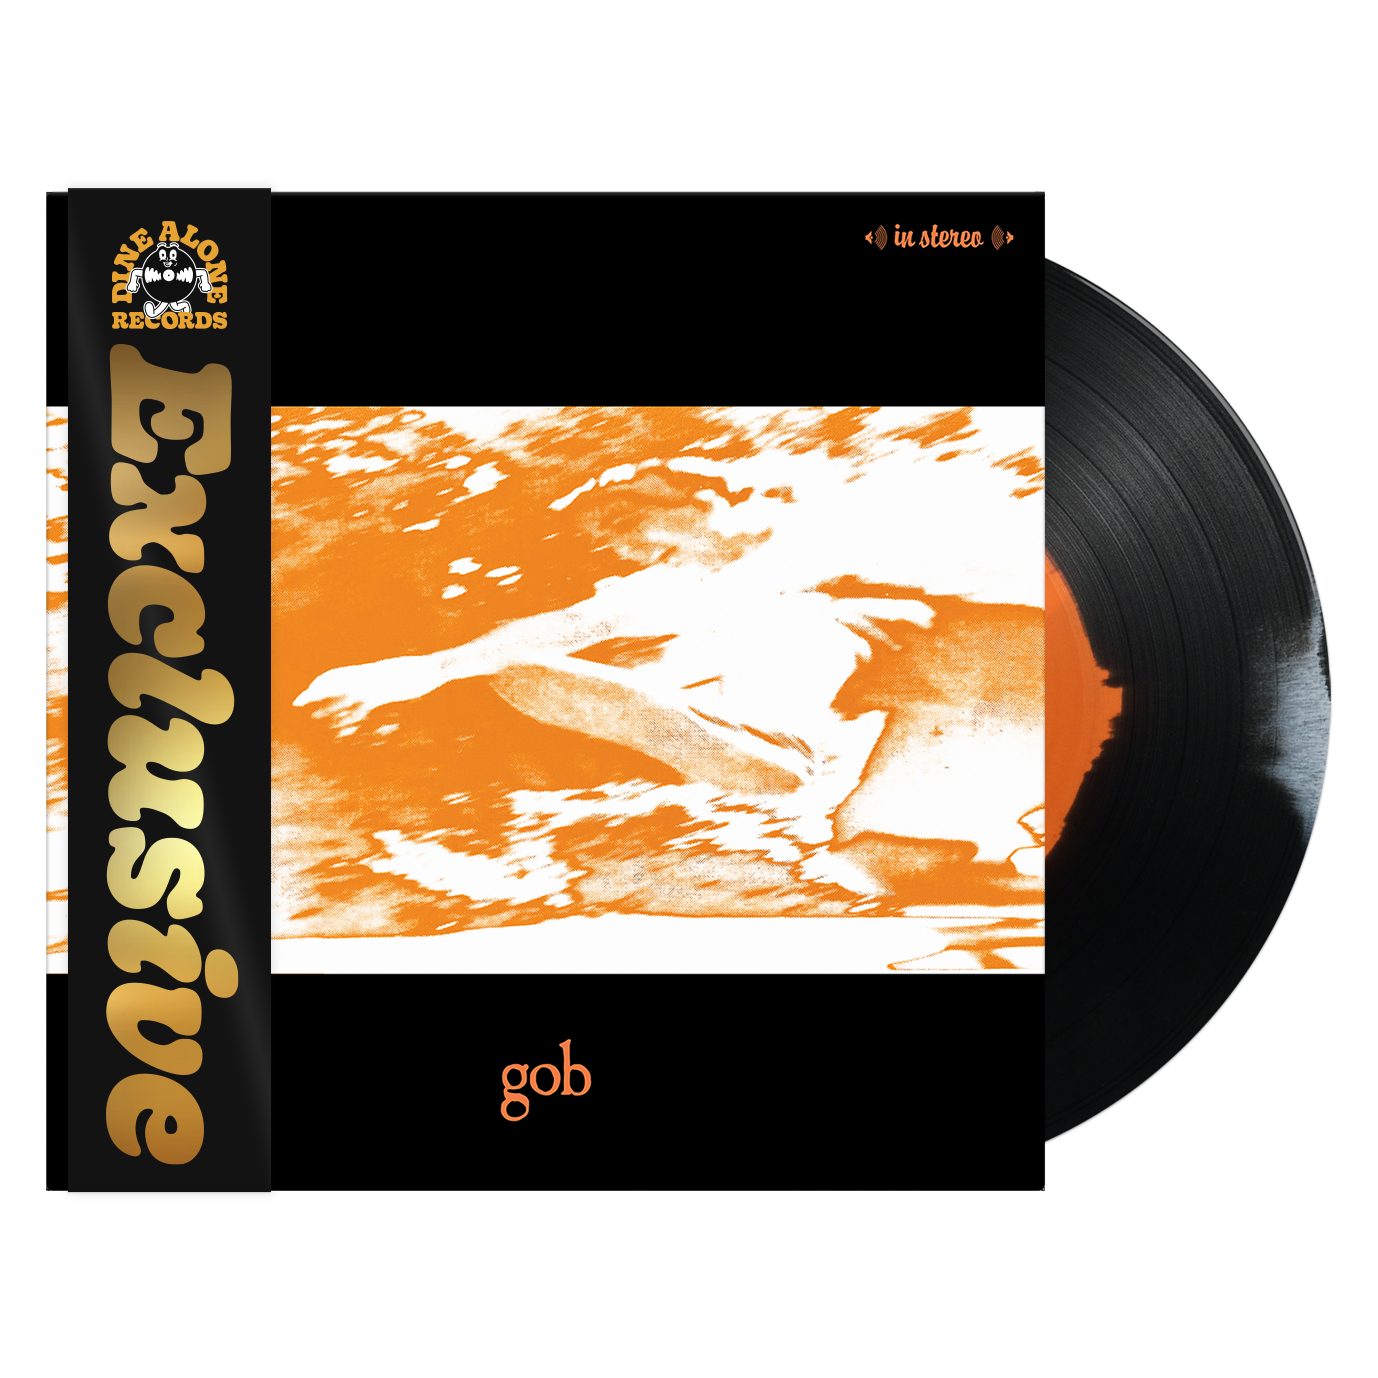 Gob (Black, White & Orange A-Side B-Side LP)